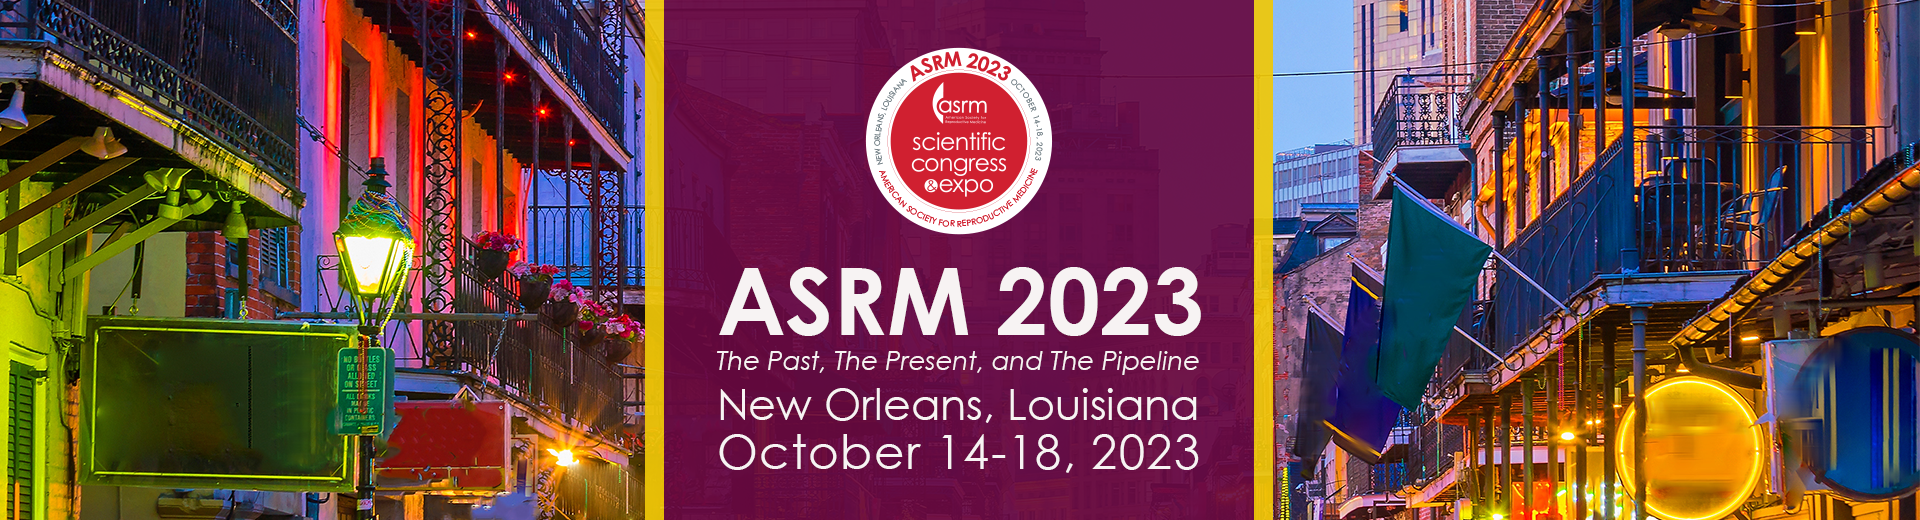 2023 ASRM Scientific Congress & Expo